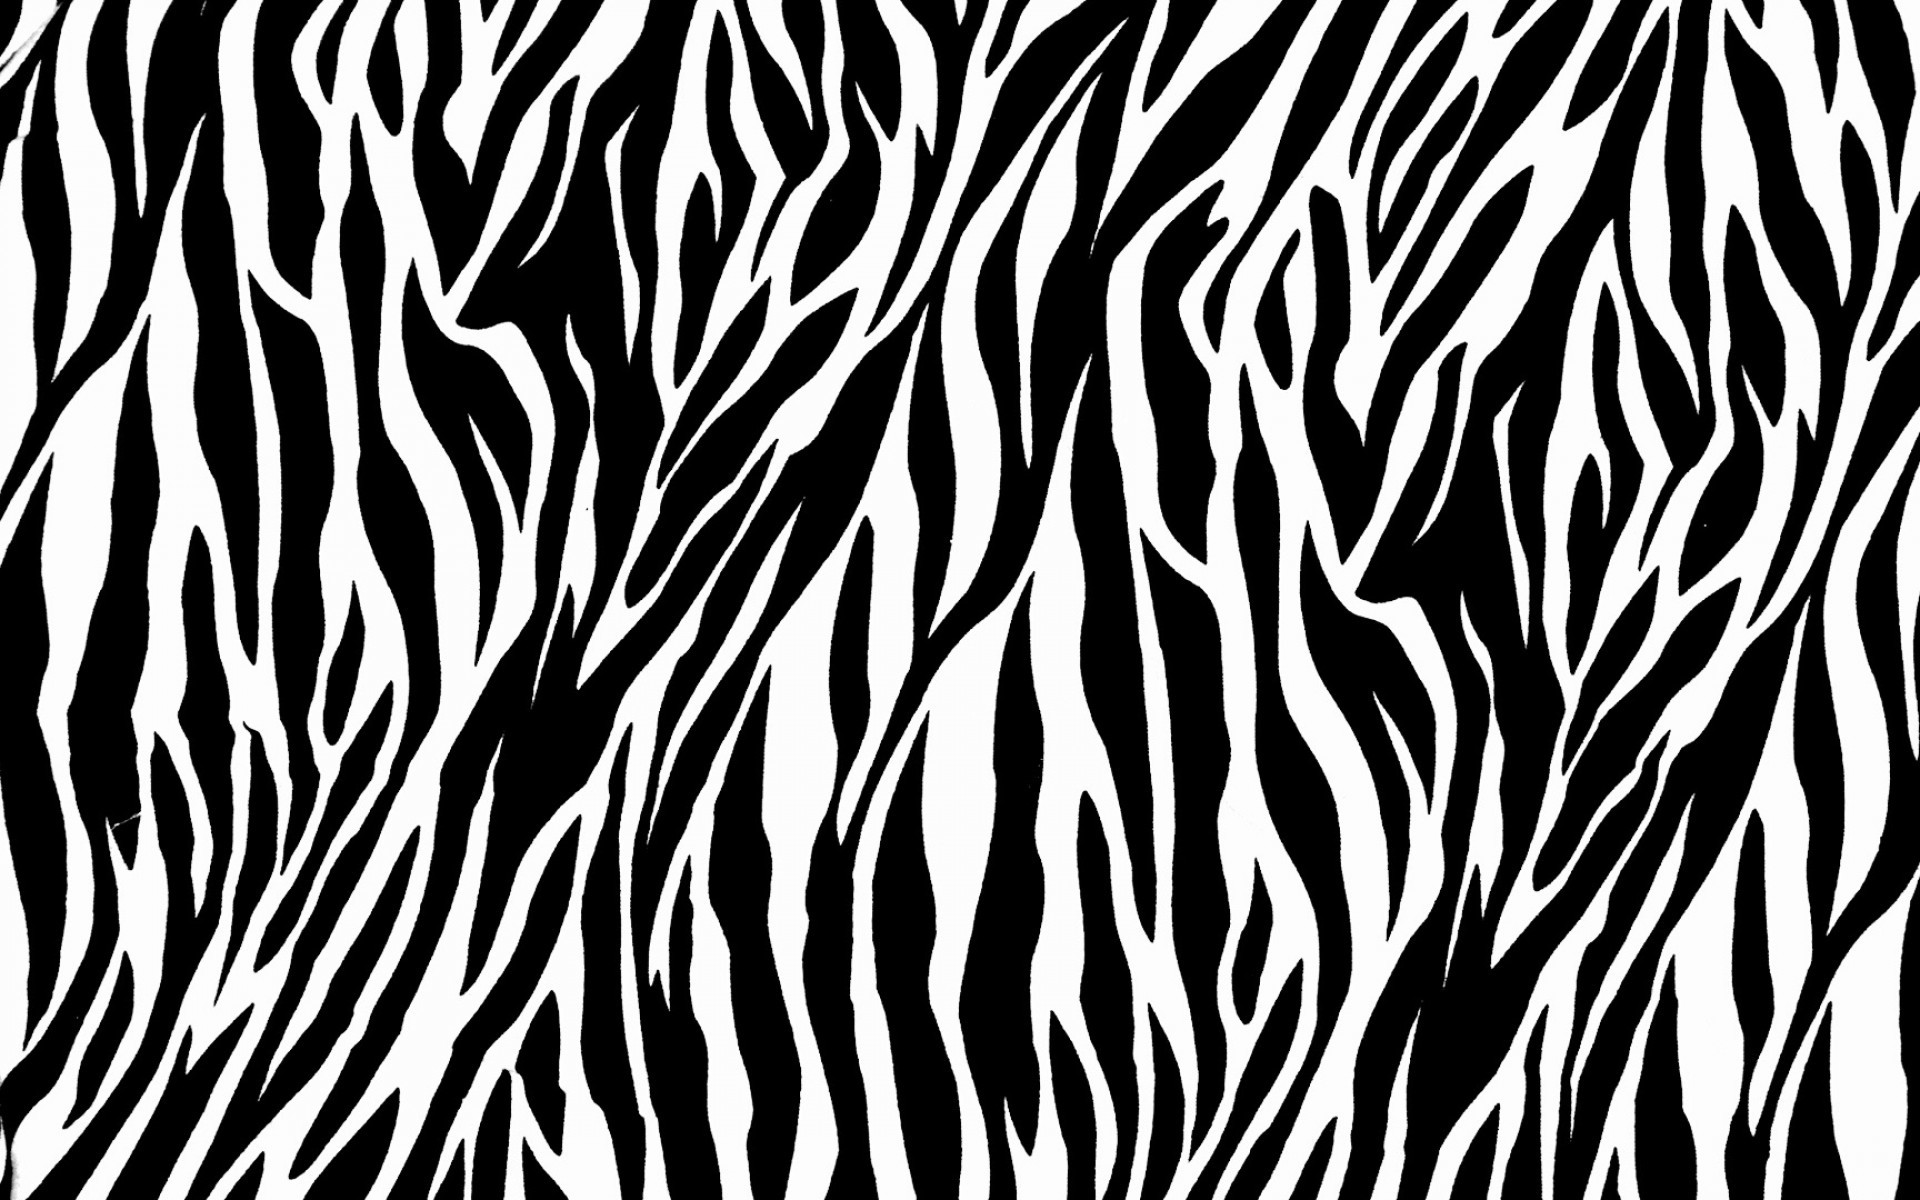 1920x1200 Zebra Print Wallpaper HD - wallpaper.wiki